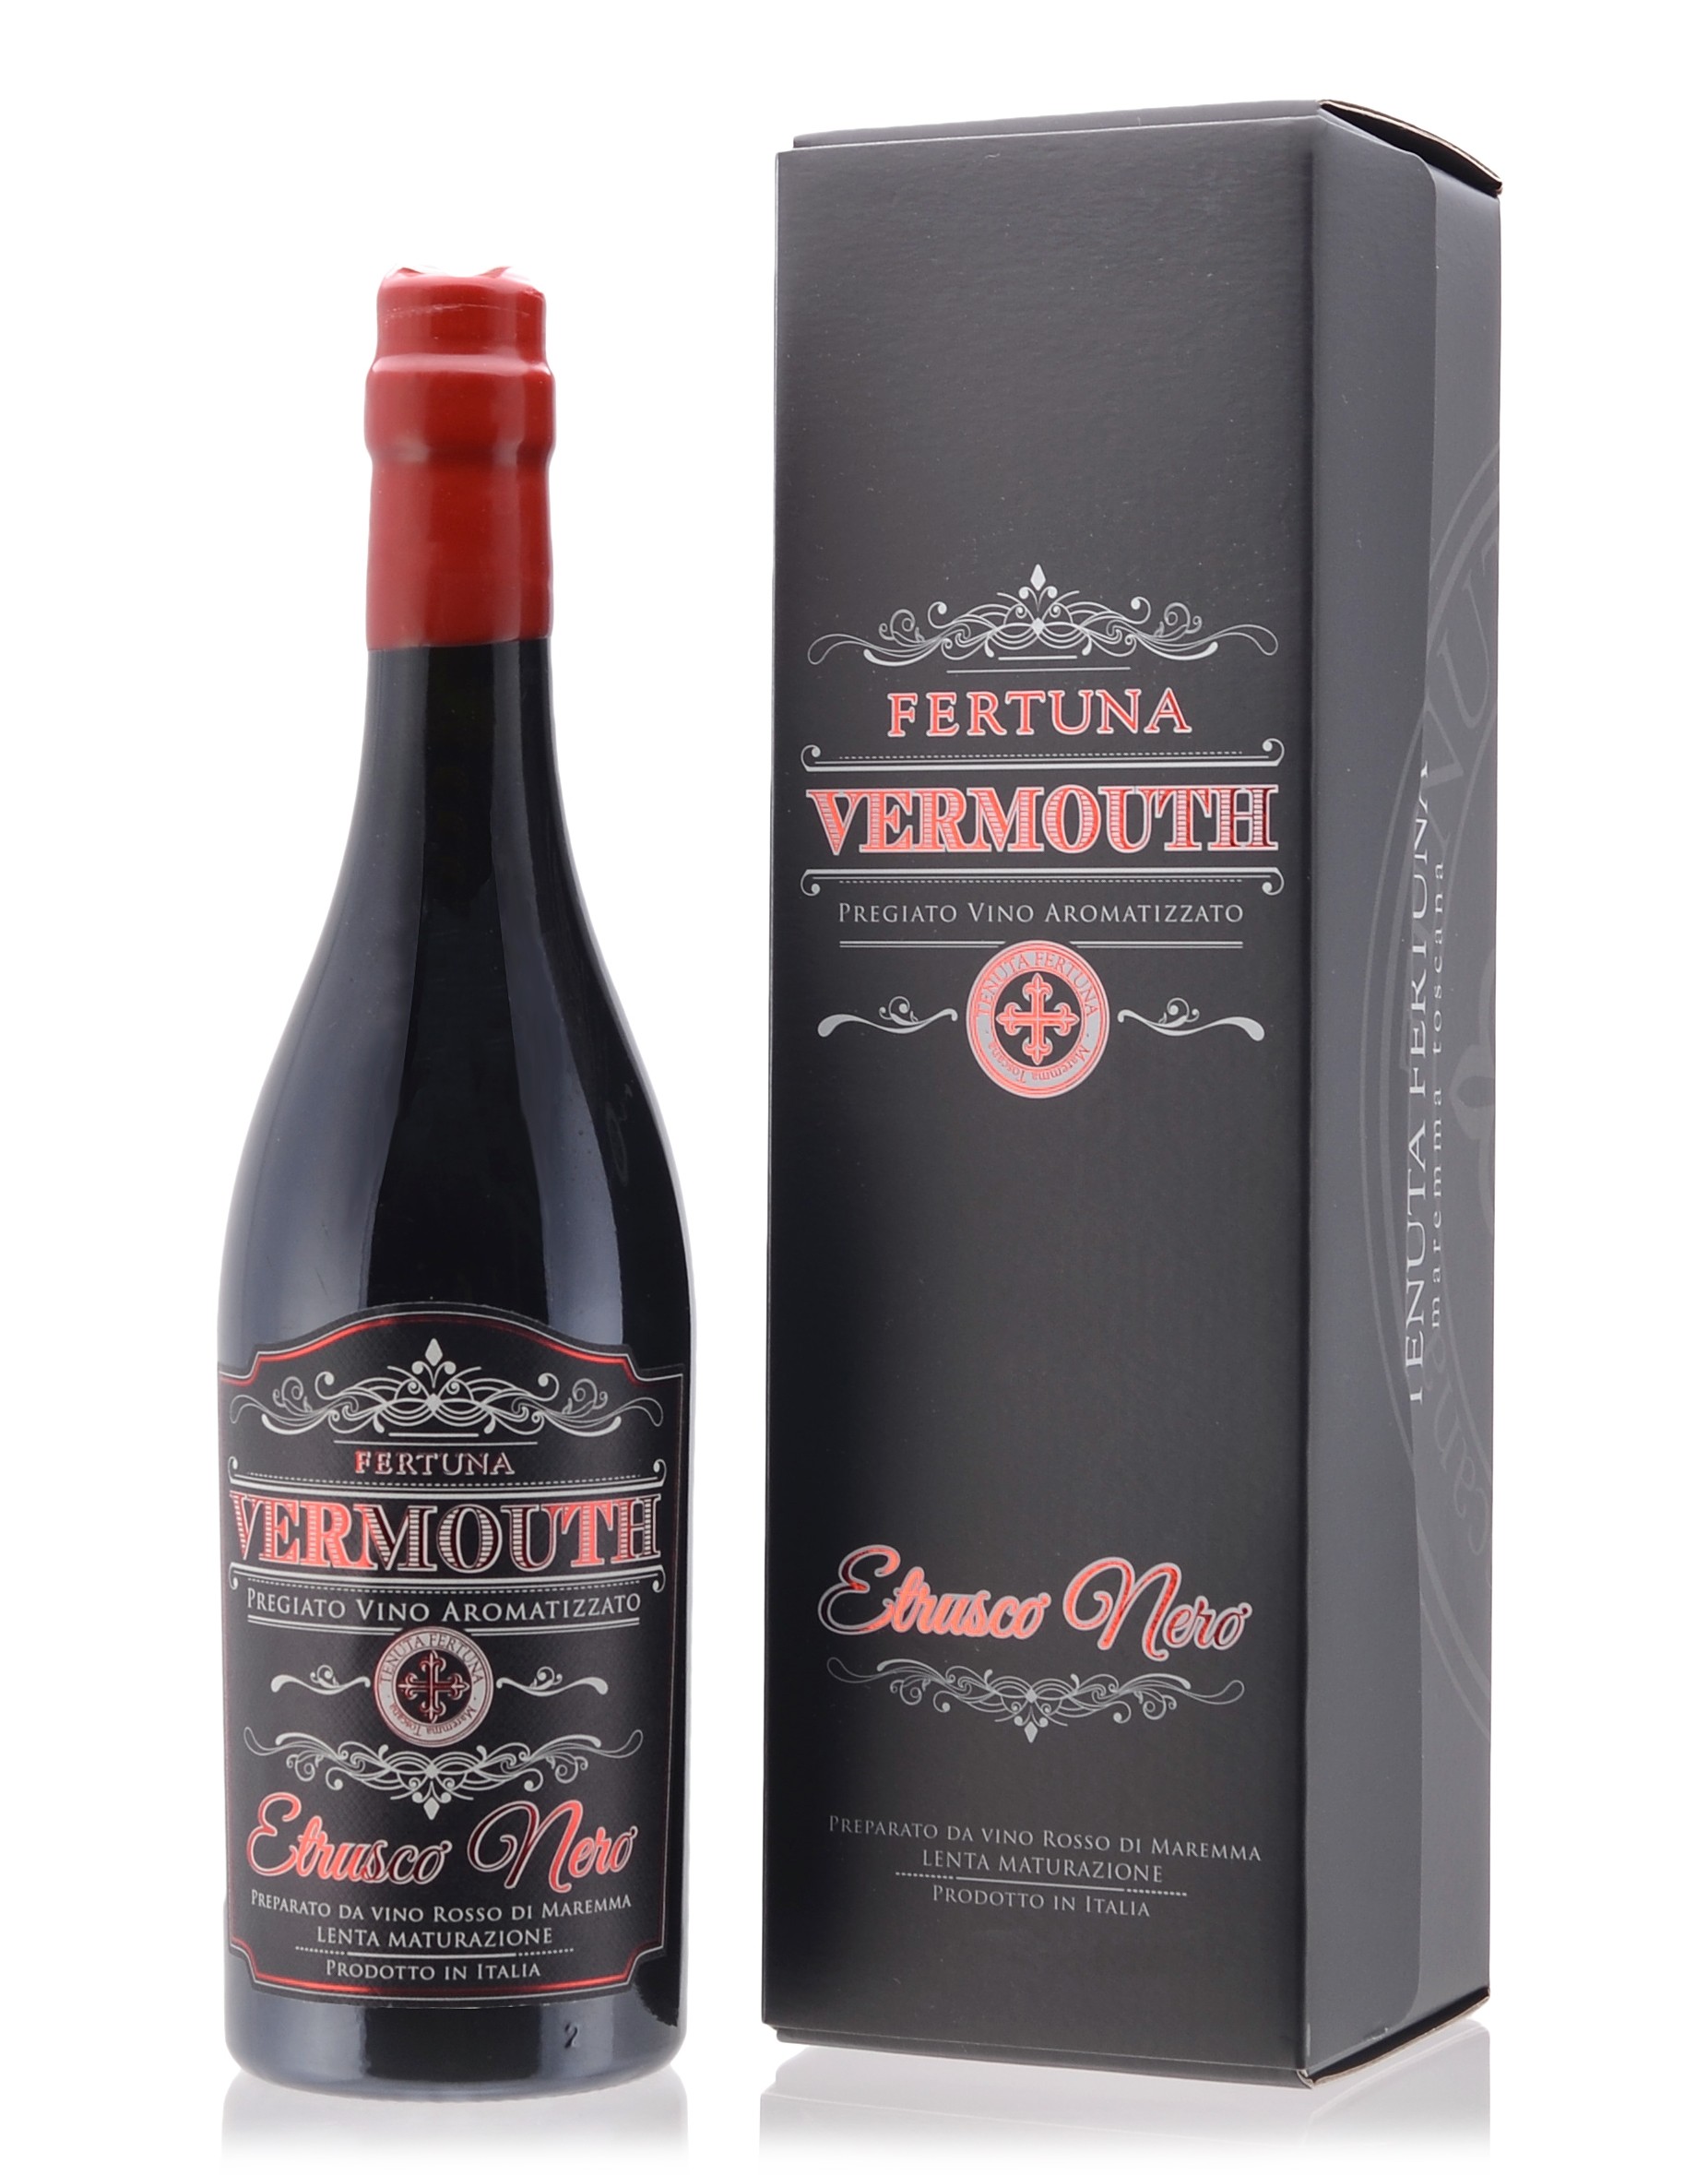 Tenuta Fertuna - Vermouth Etrusco Nero - Pregiato Vino